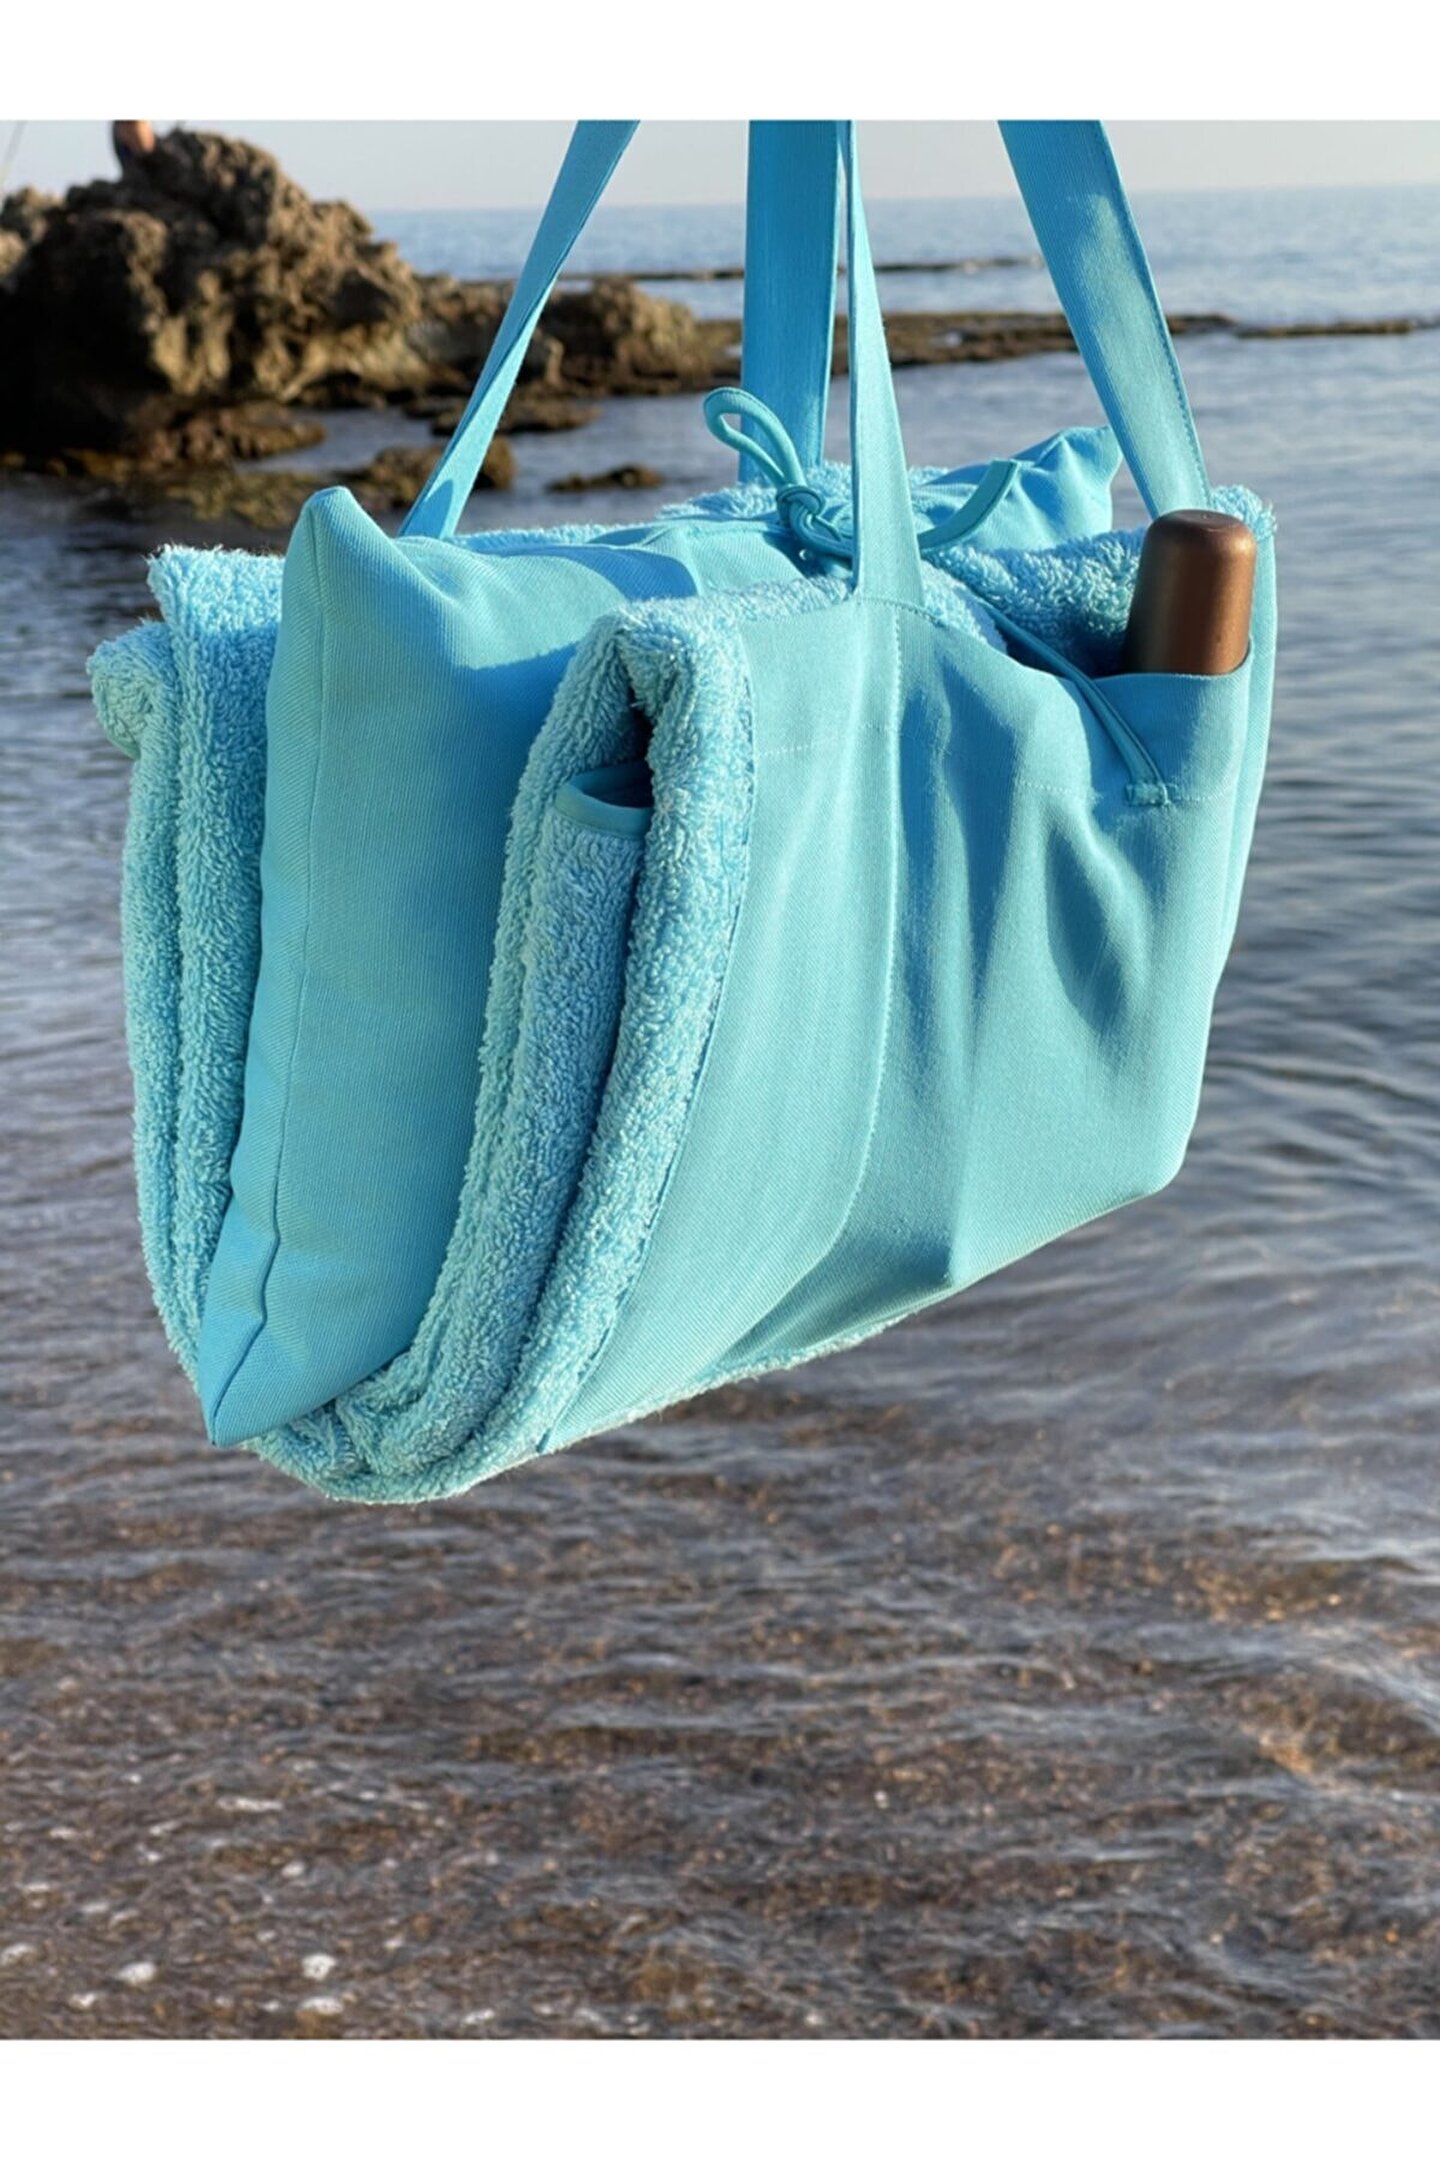 Liber Home Mavi Çanta Formunda Plaj Havlusu